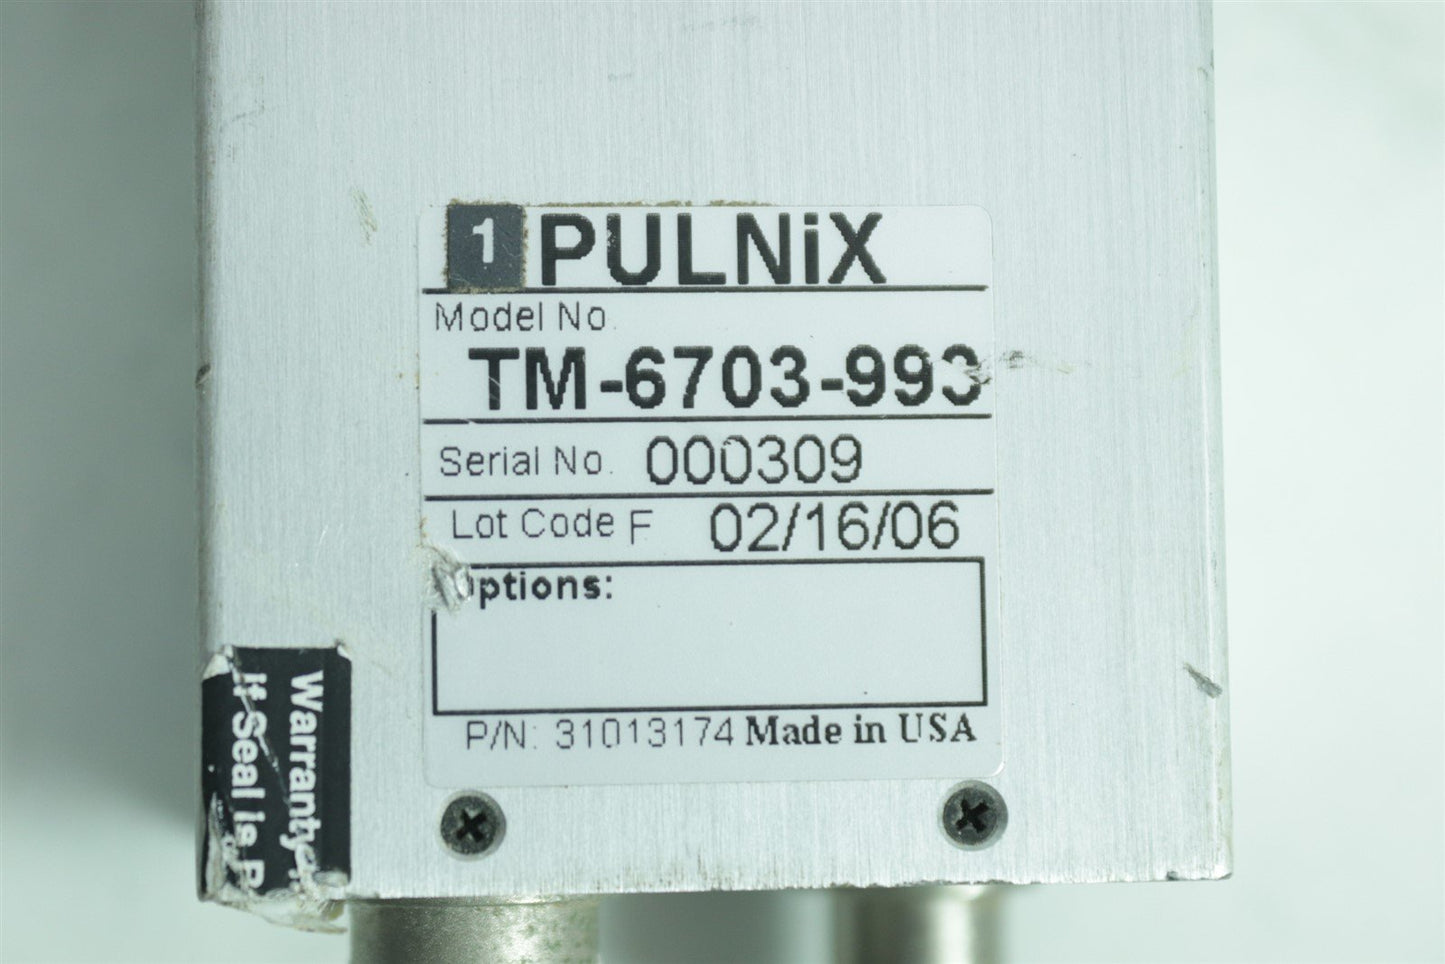 Pulnix Tm-6703-993 CCD Video Camera 31013174